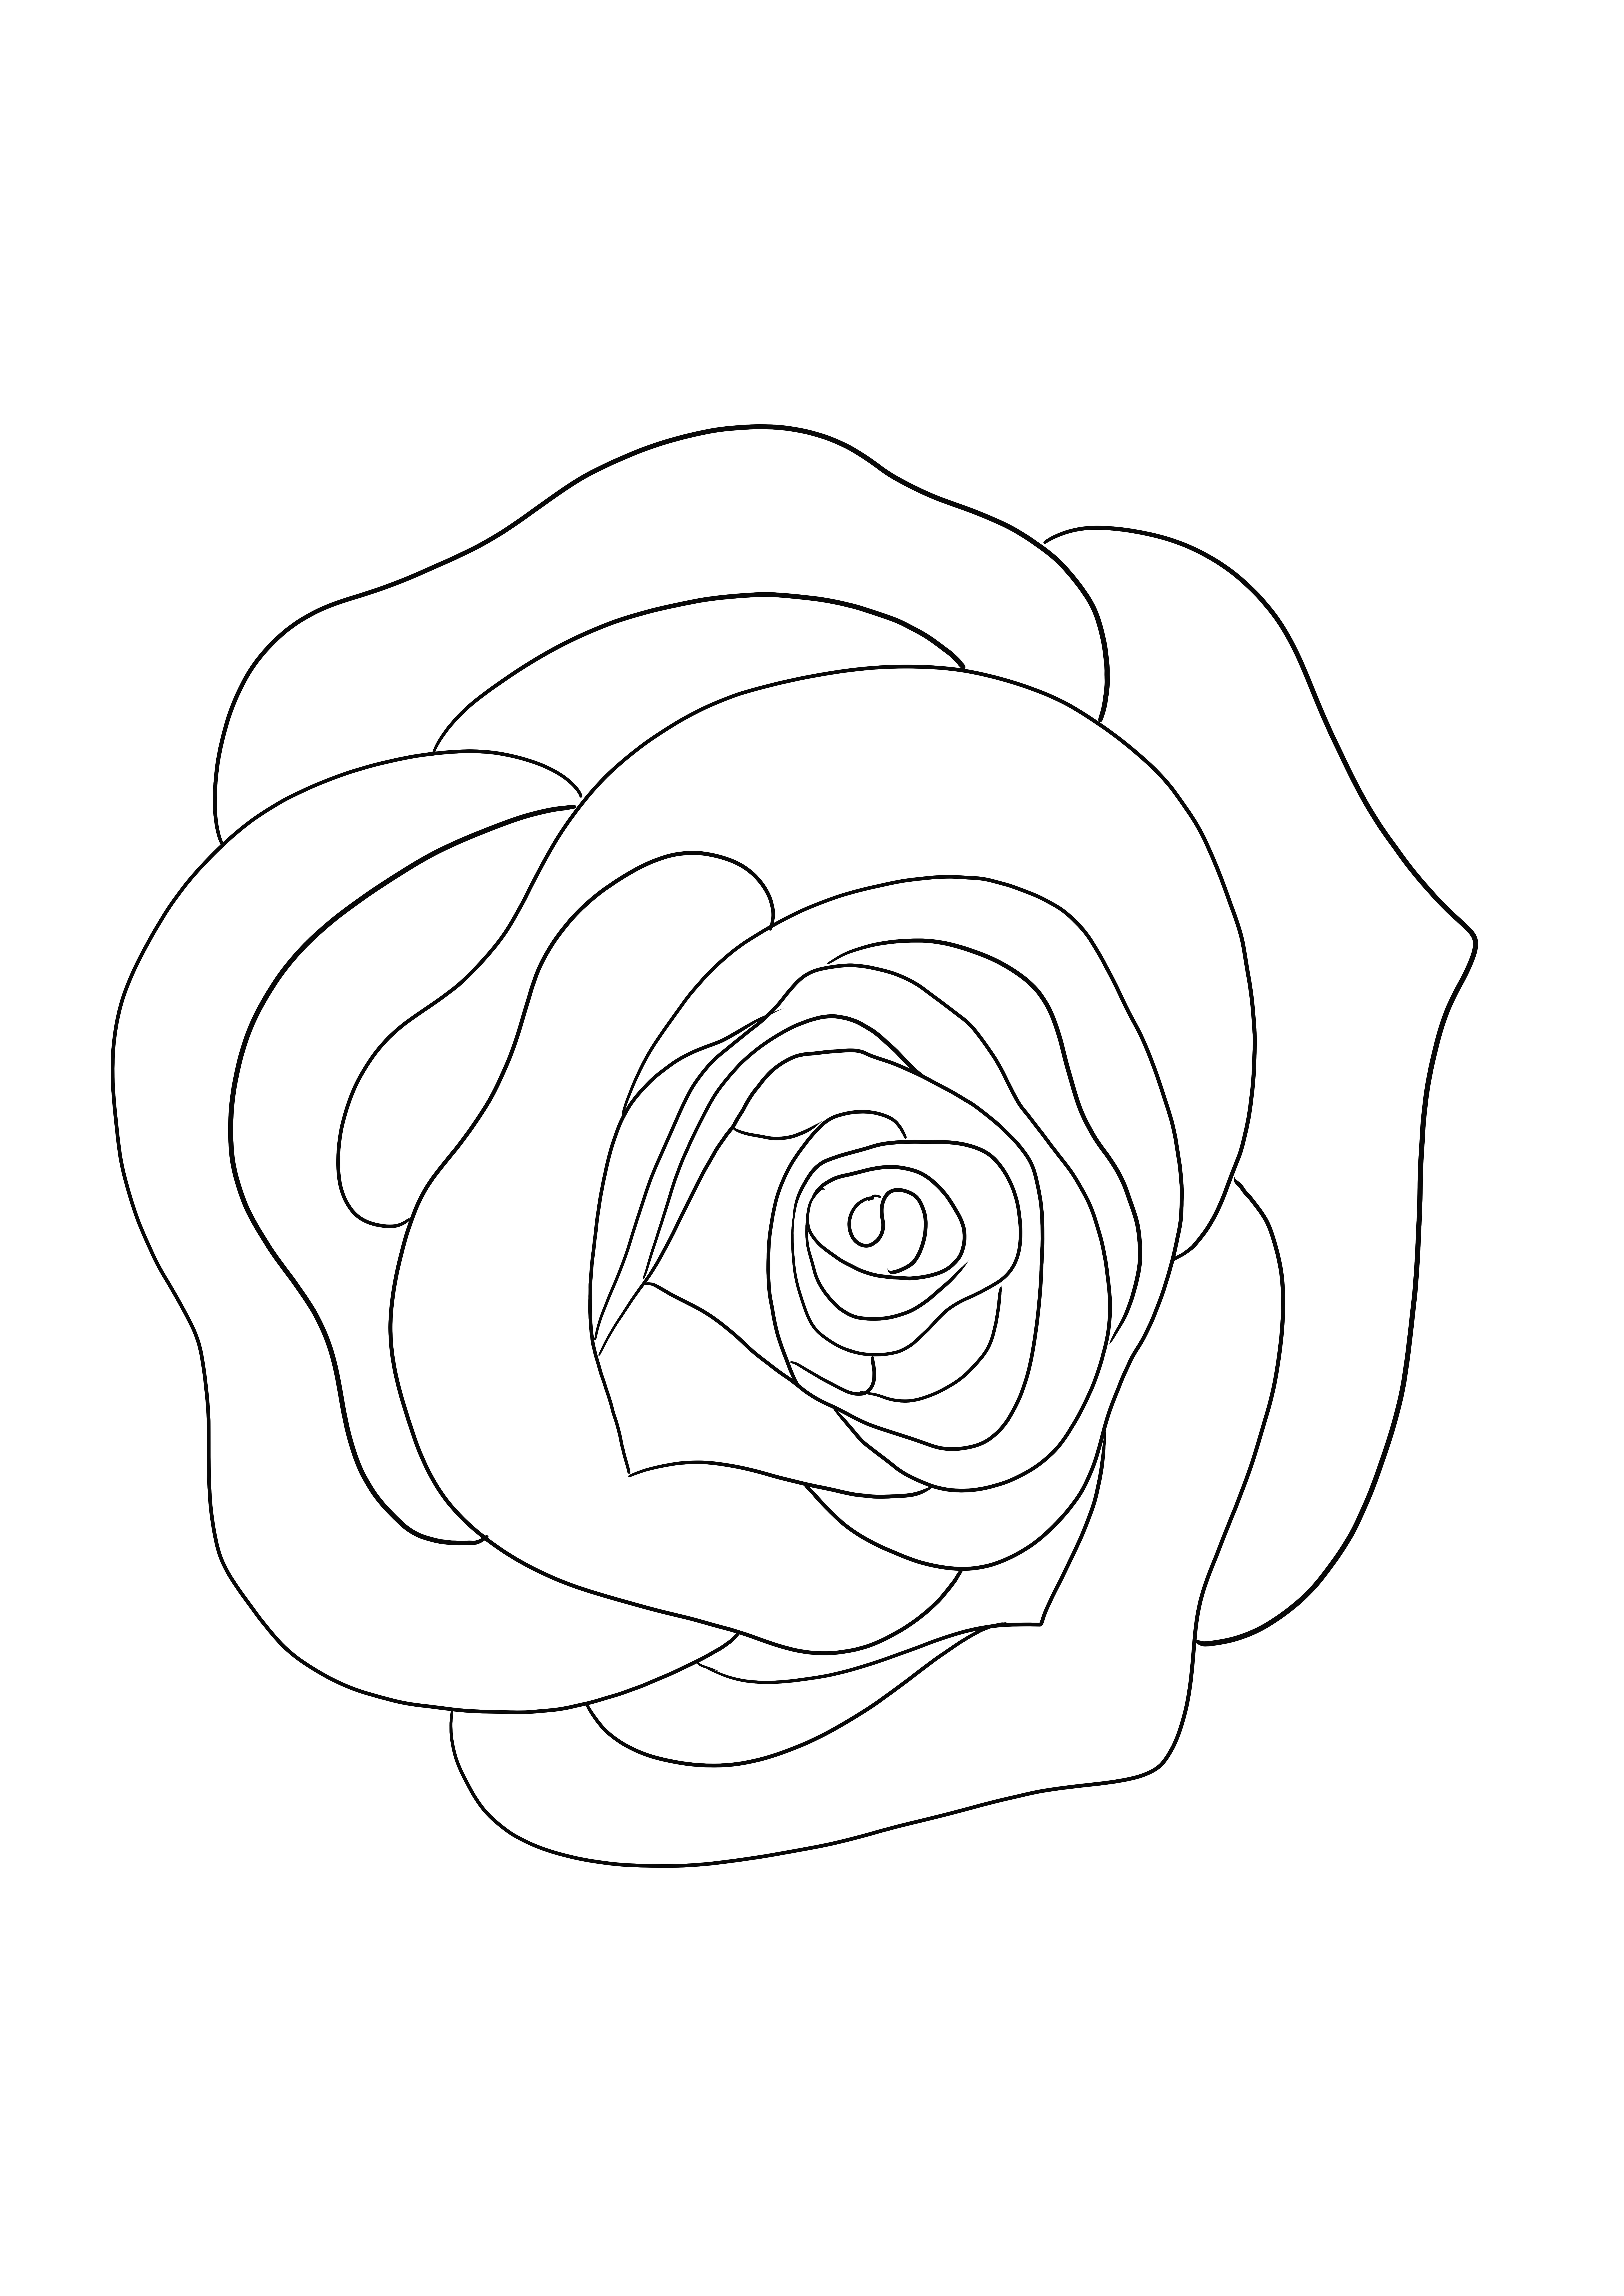 Ein einfaches Rosen-Malblatt zum kostenlosen Herunterladen oder Ausdrucken für Kinder